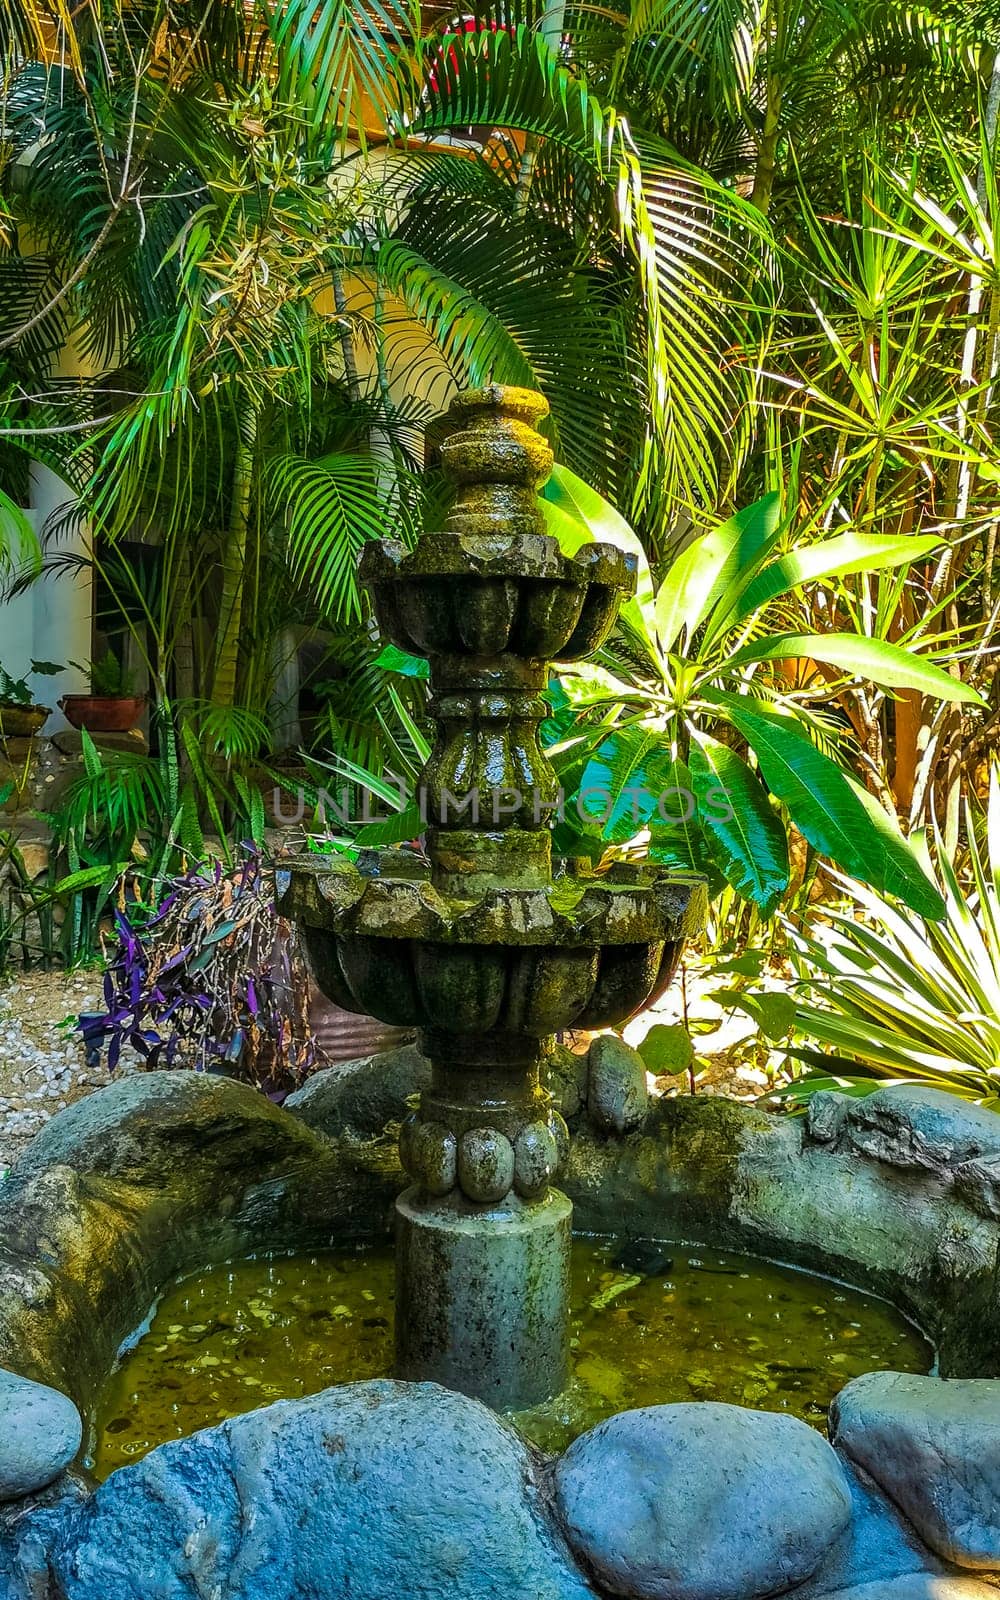 Nostalgic green fountain in the garden with moss in Zicatela Puerto Escondido Oaxaca Mexico.